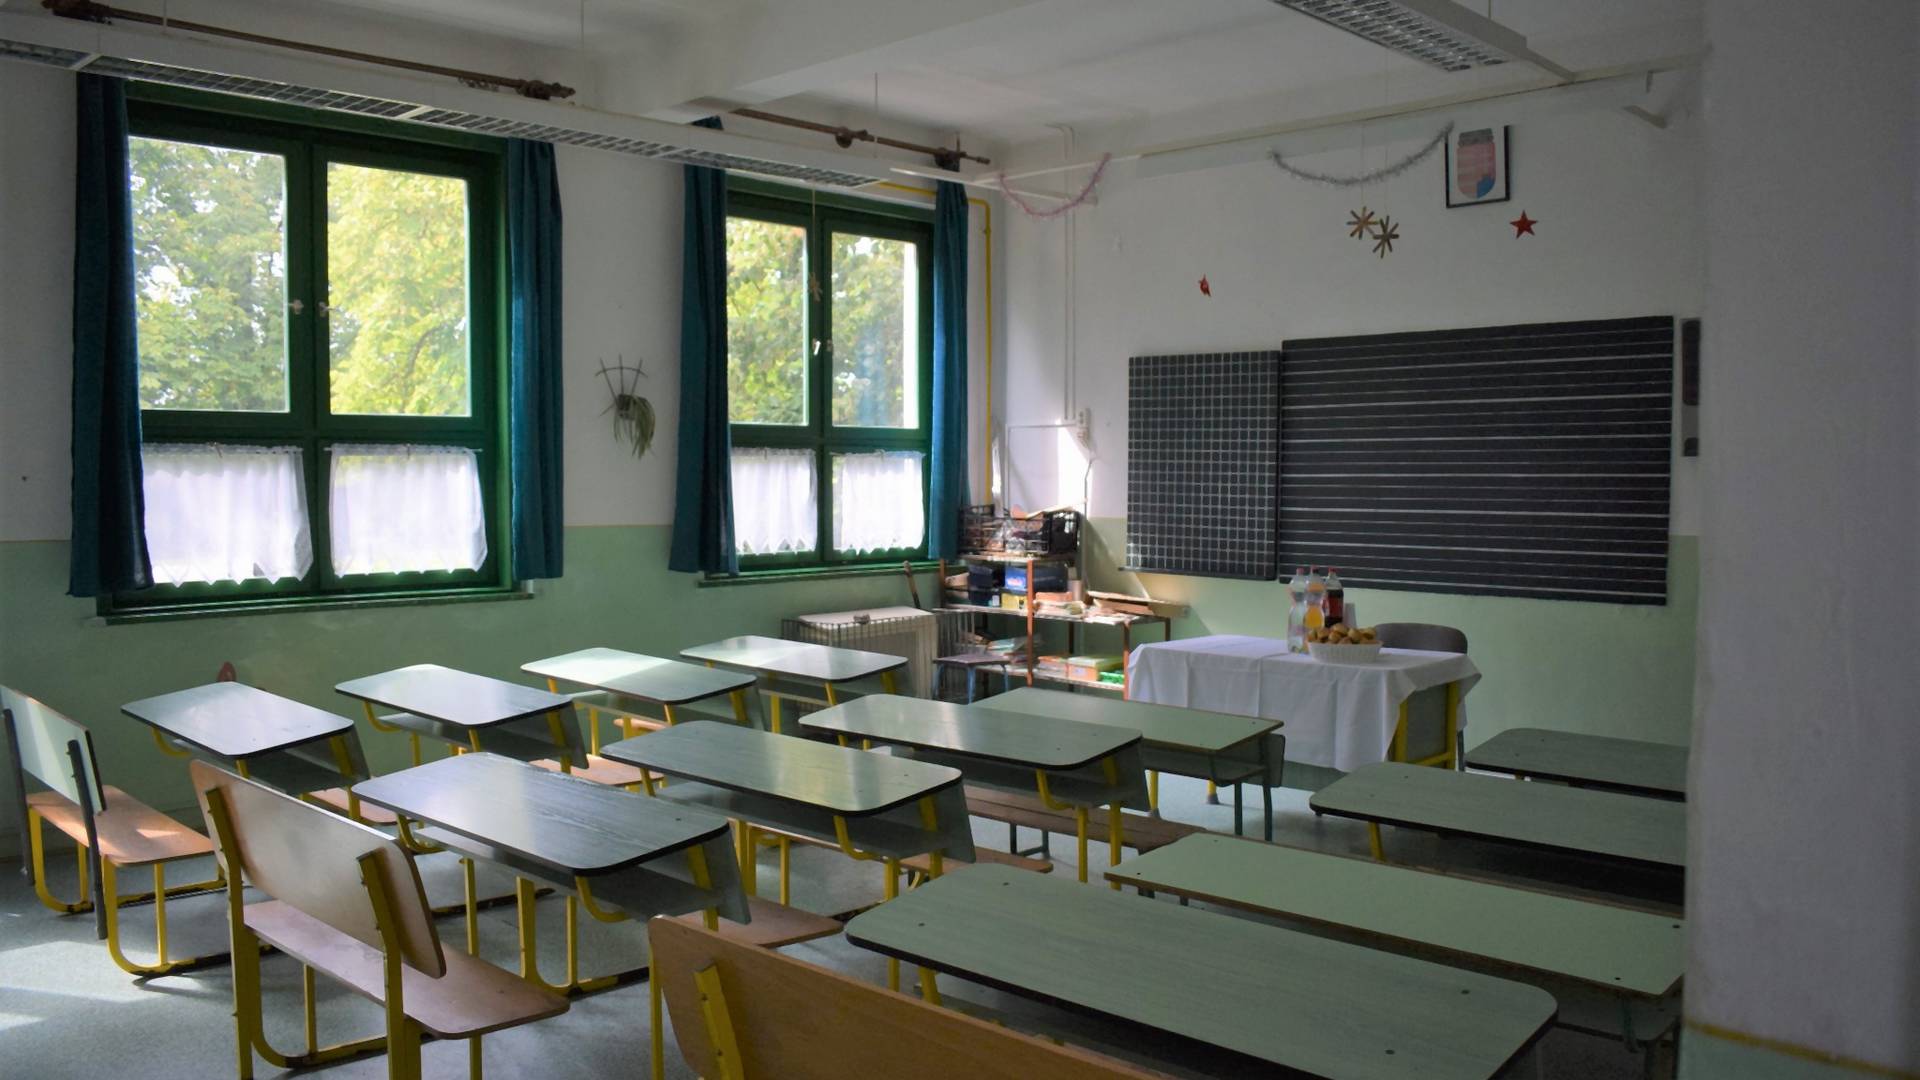 Olyan sok az új fertőzött, hogy lehet, Romániában nem nyitnak ki az iskolák